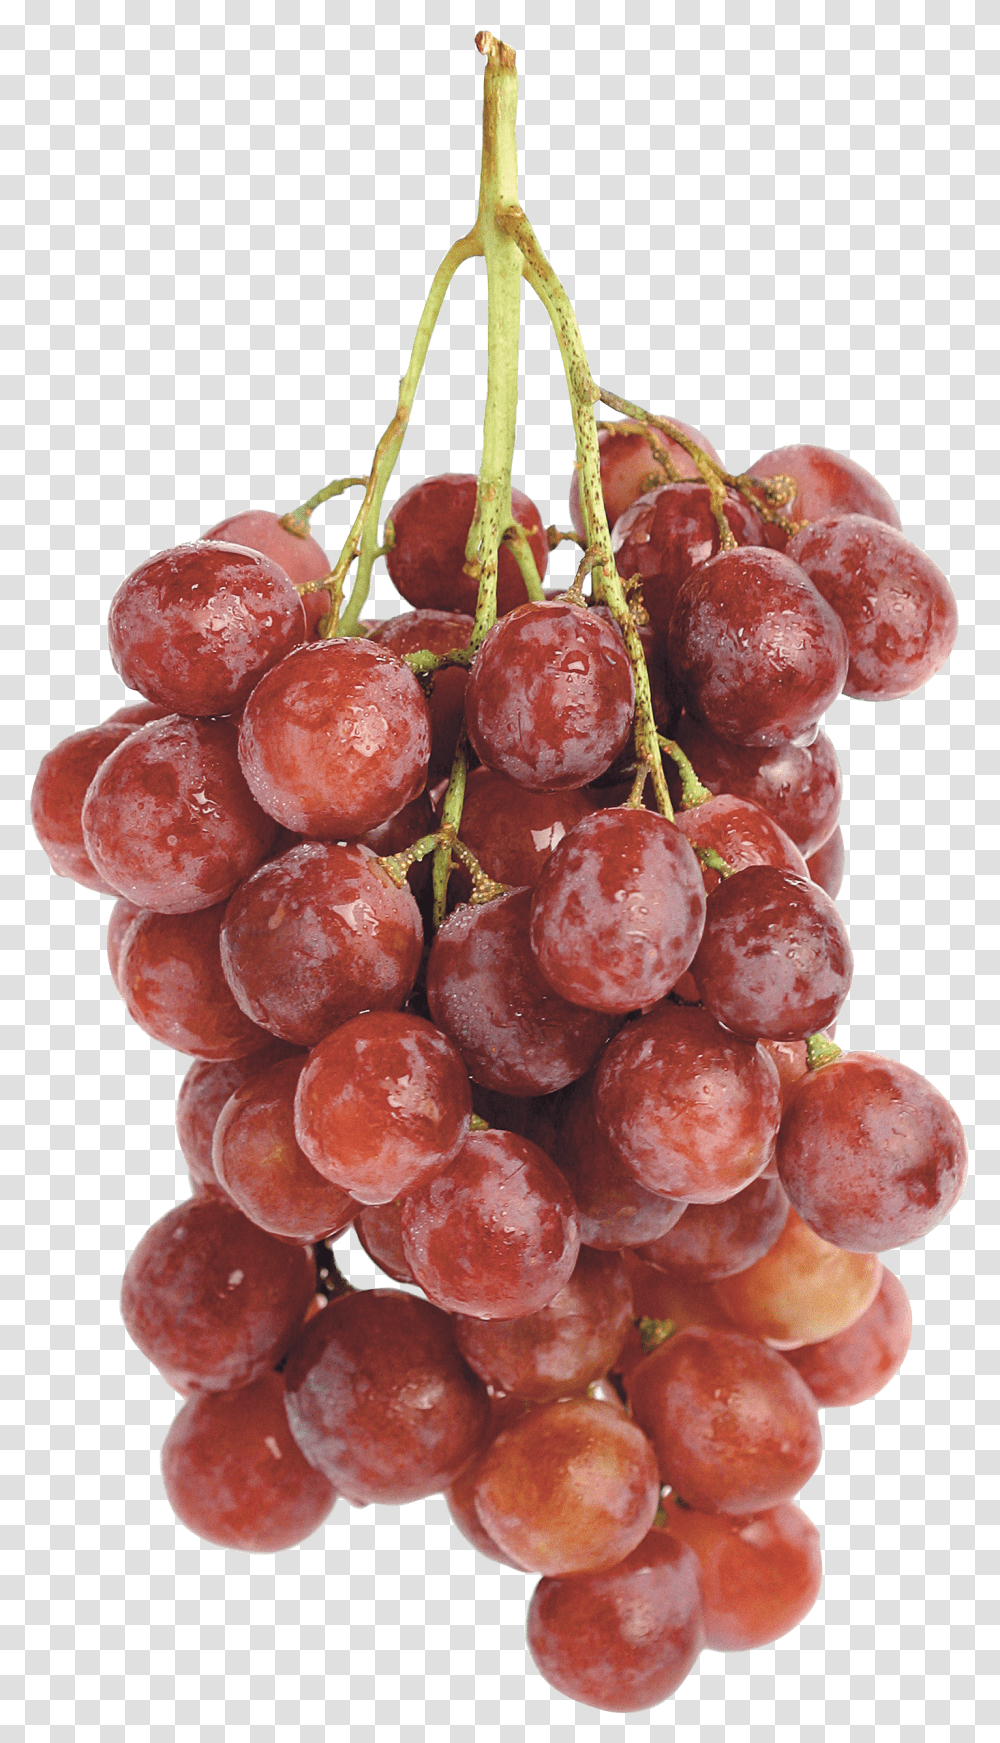 Grape, Fruit, Plant, Grapes, Food Transparent Png